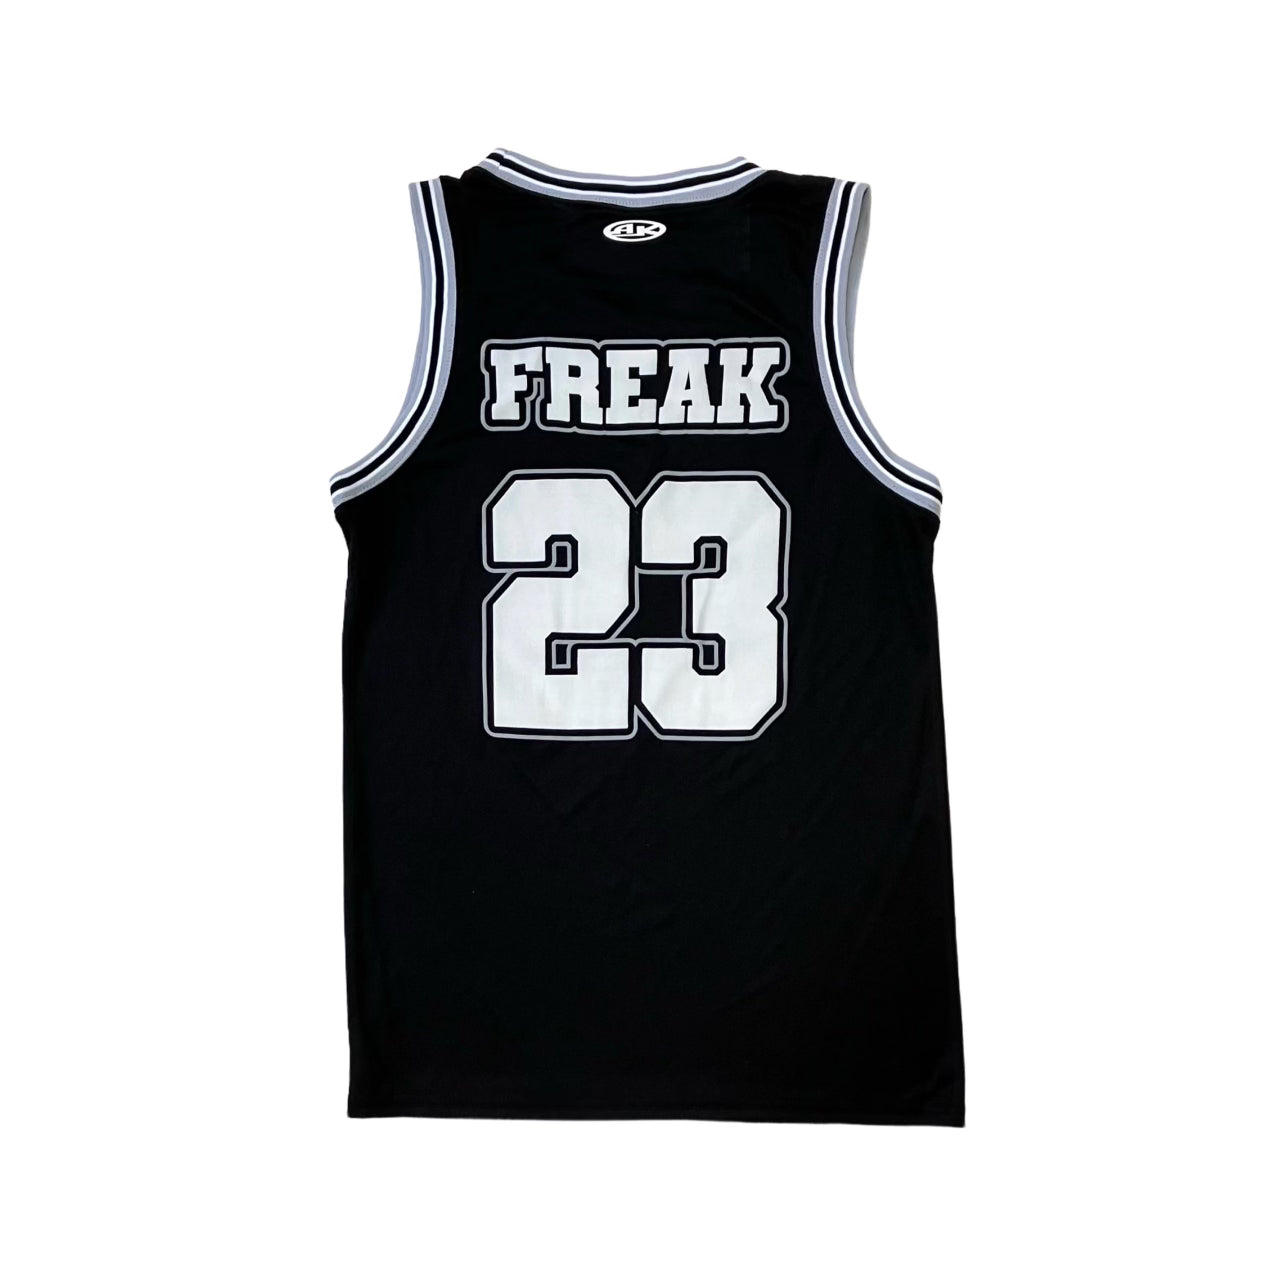 Freak Basketball Jersey